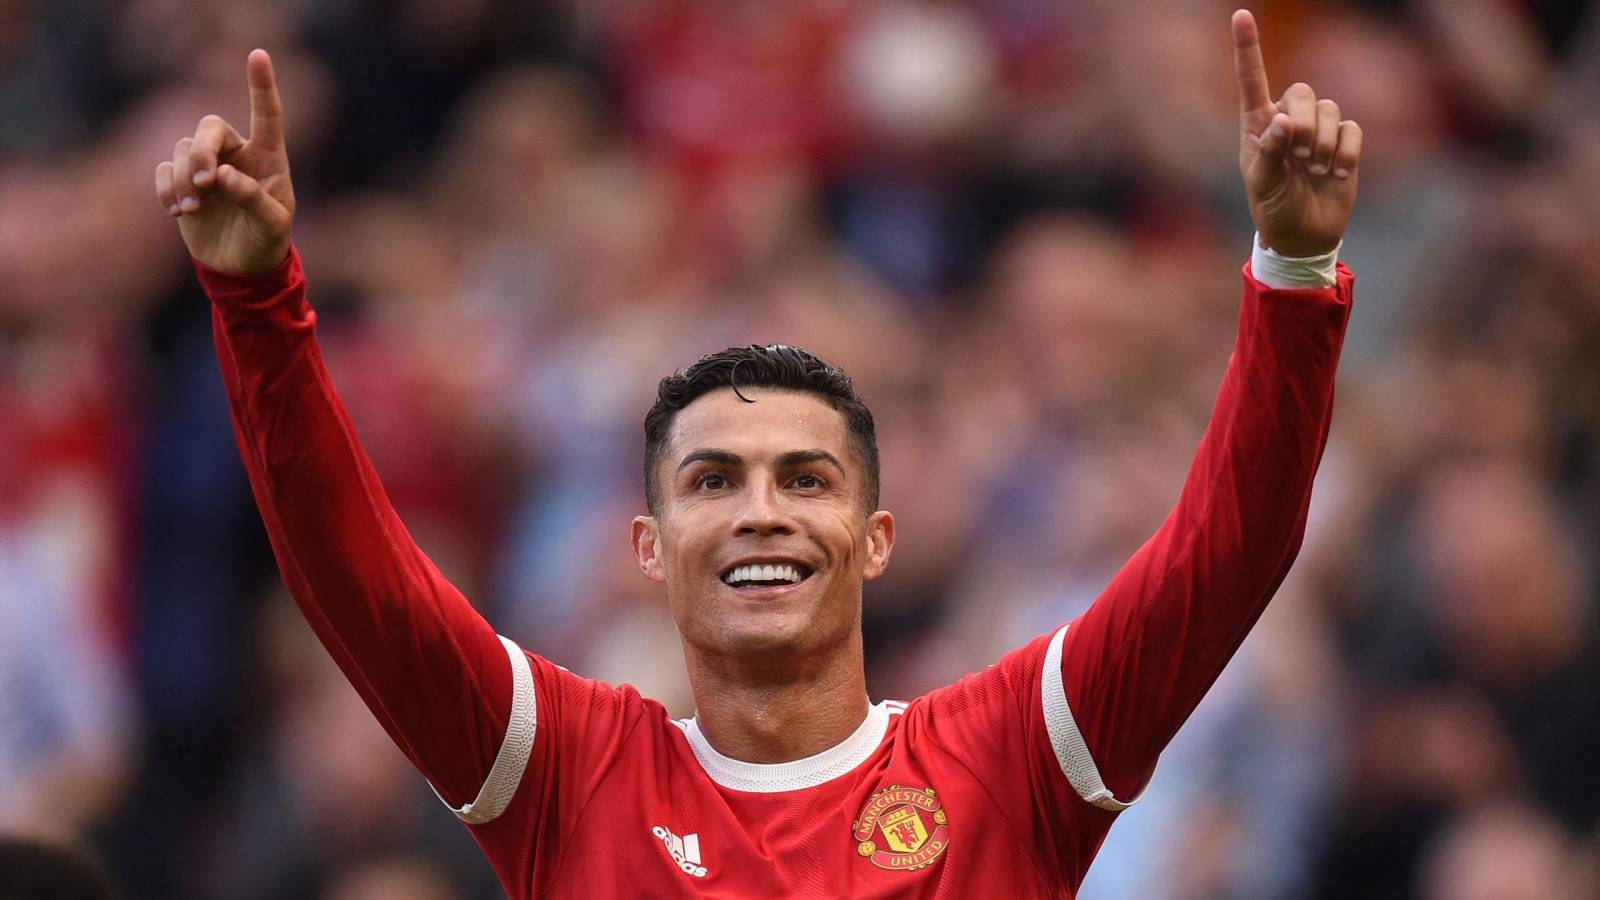 Niespodziewane ogłoszenie Cristiano Ronaldo WYJAZD z Manchesteru United